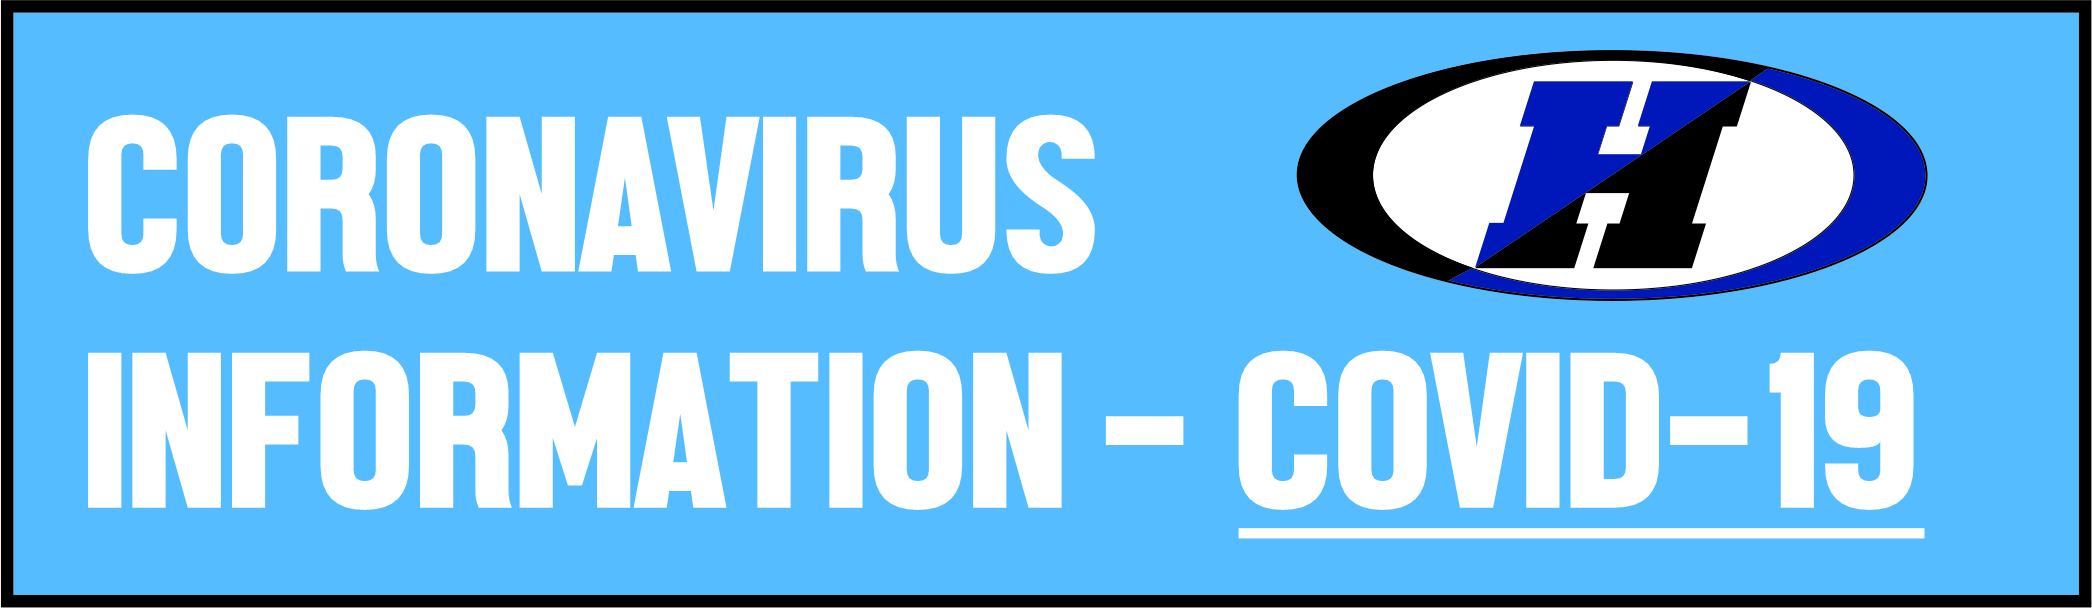 Coronavirus info header image